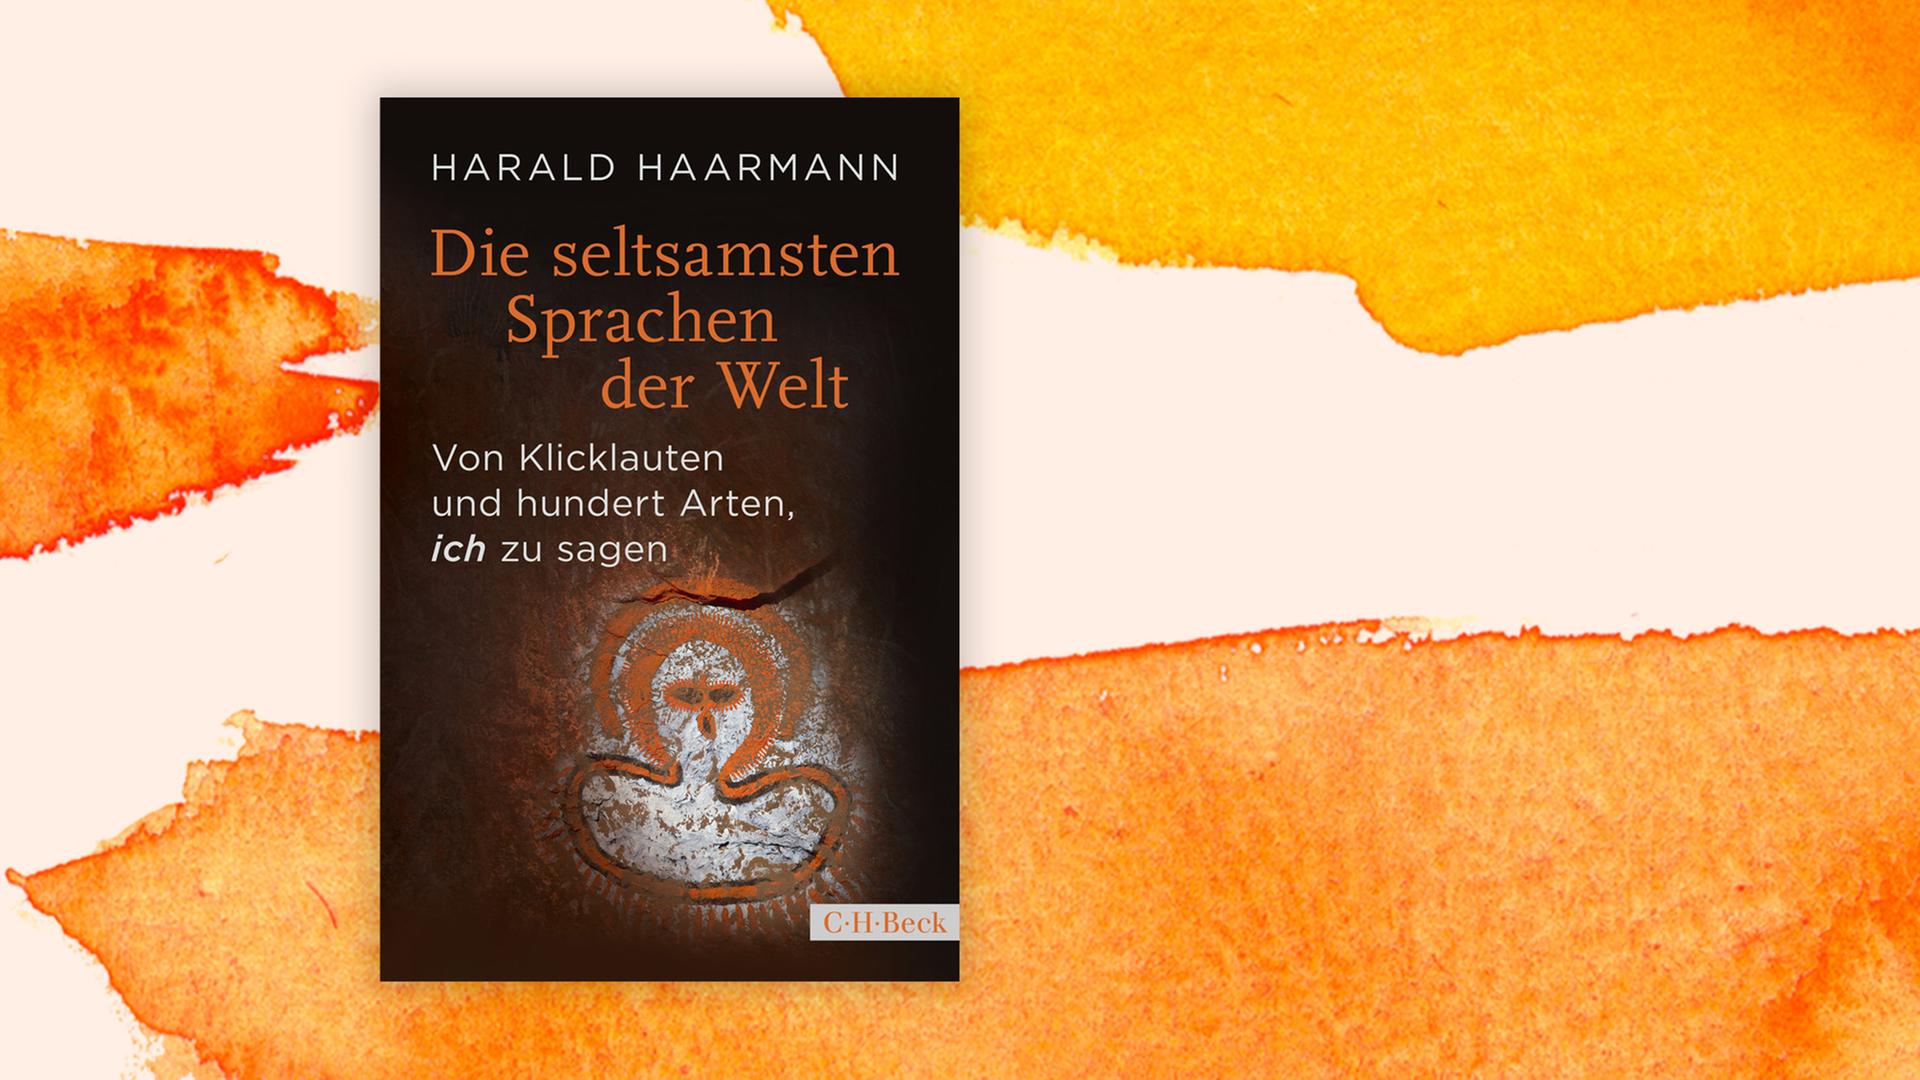 Buchcover zu Harald Haarmann: "Die seltsamsten Sprachen der Welt"